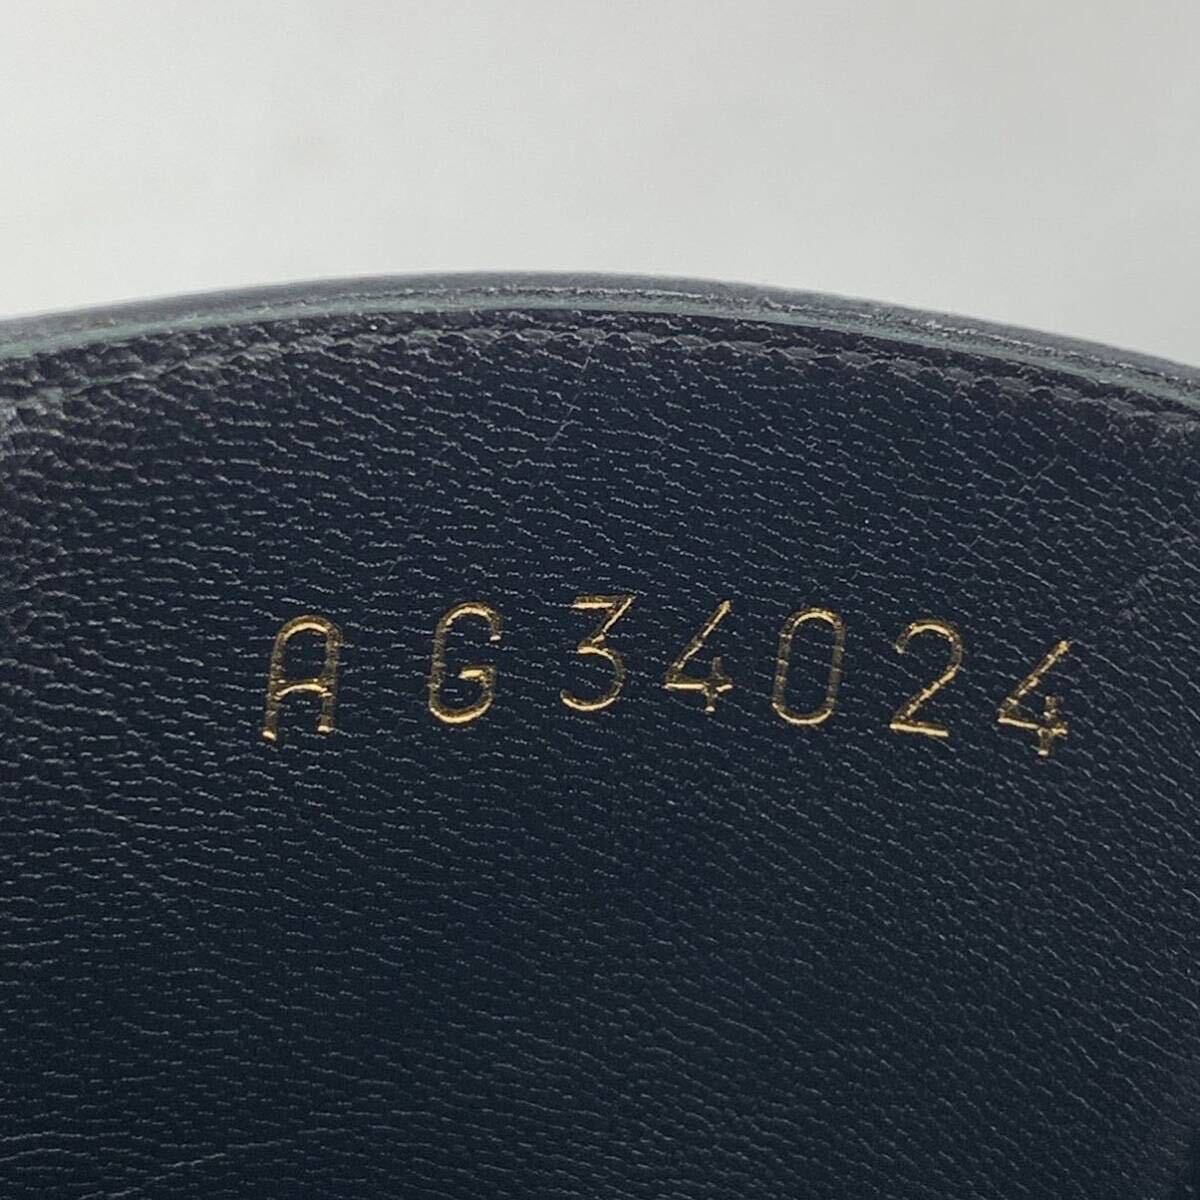  прекрасный товар Chanel CHANEL ботинки короткие сапоги обувь 2018 производства кожа черный здесь Mark цепь matelasse AG 34024 Италия производства 36